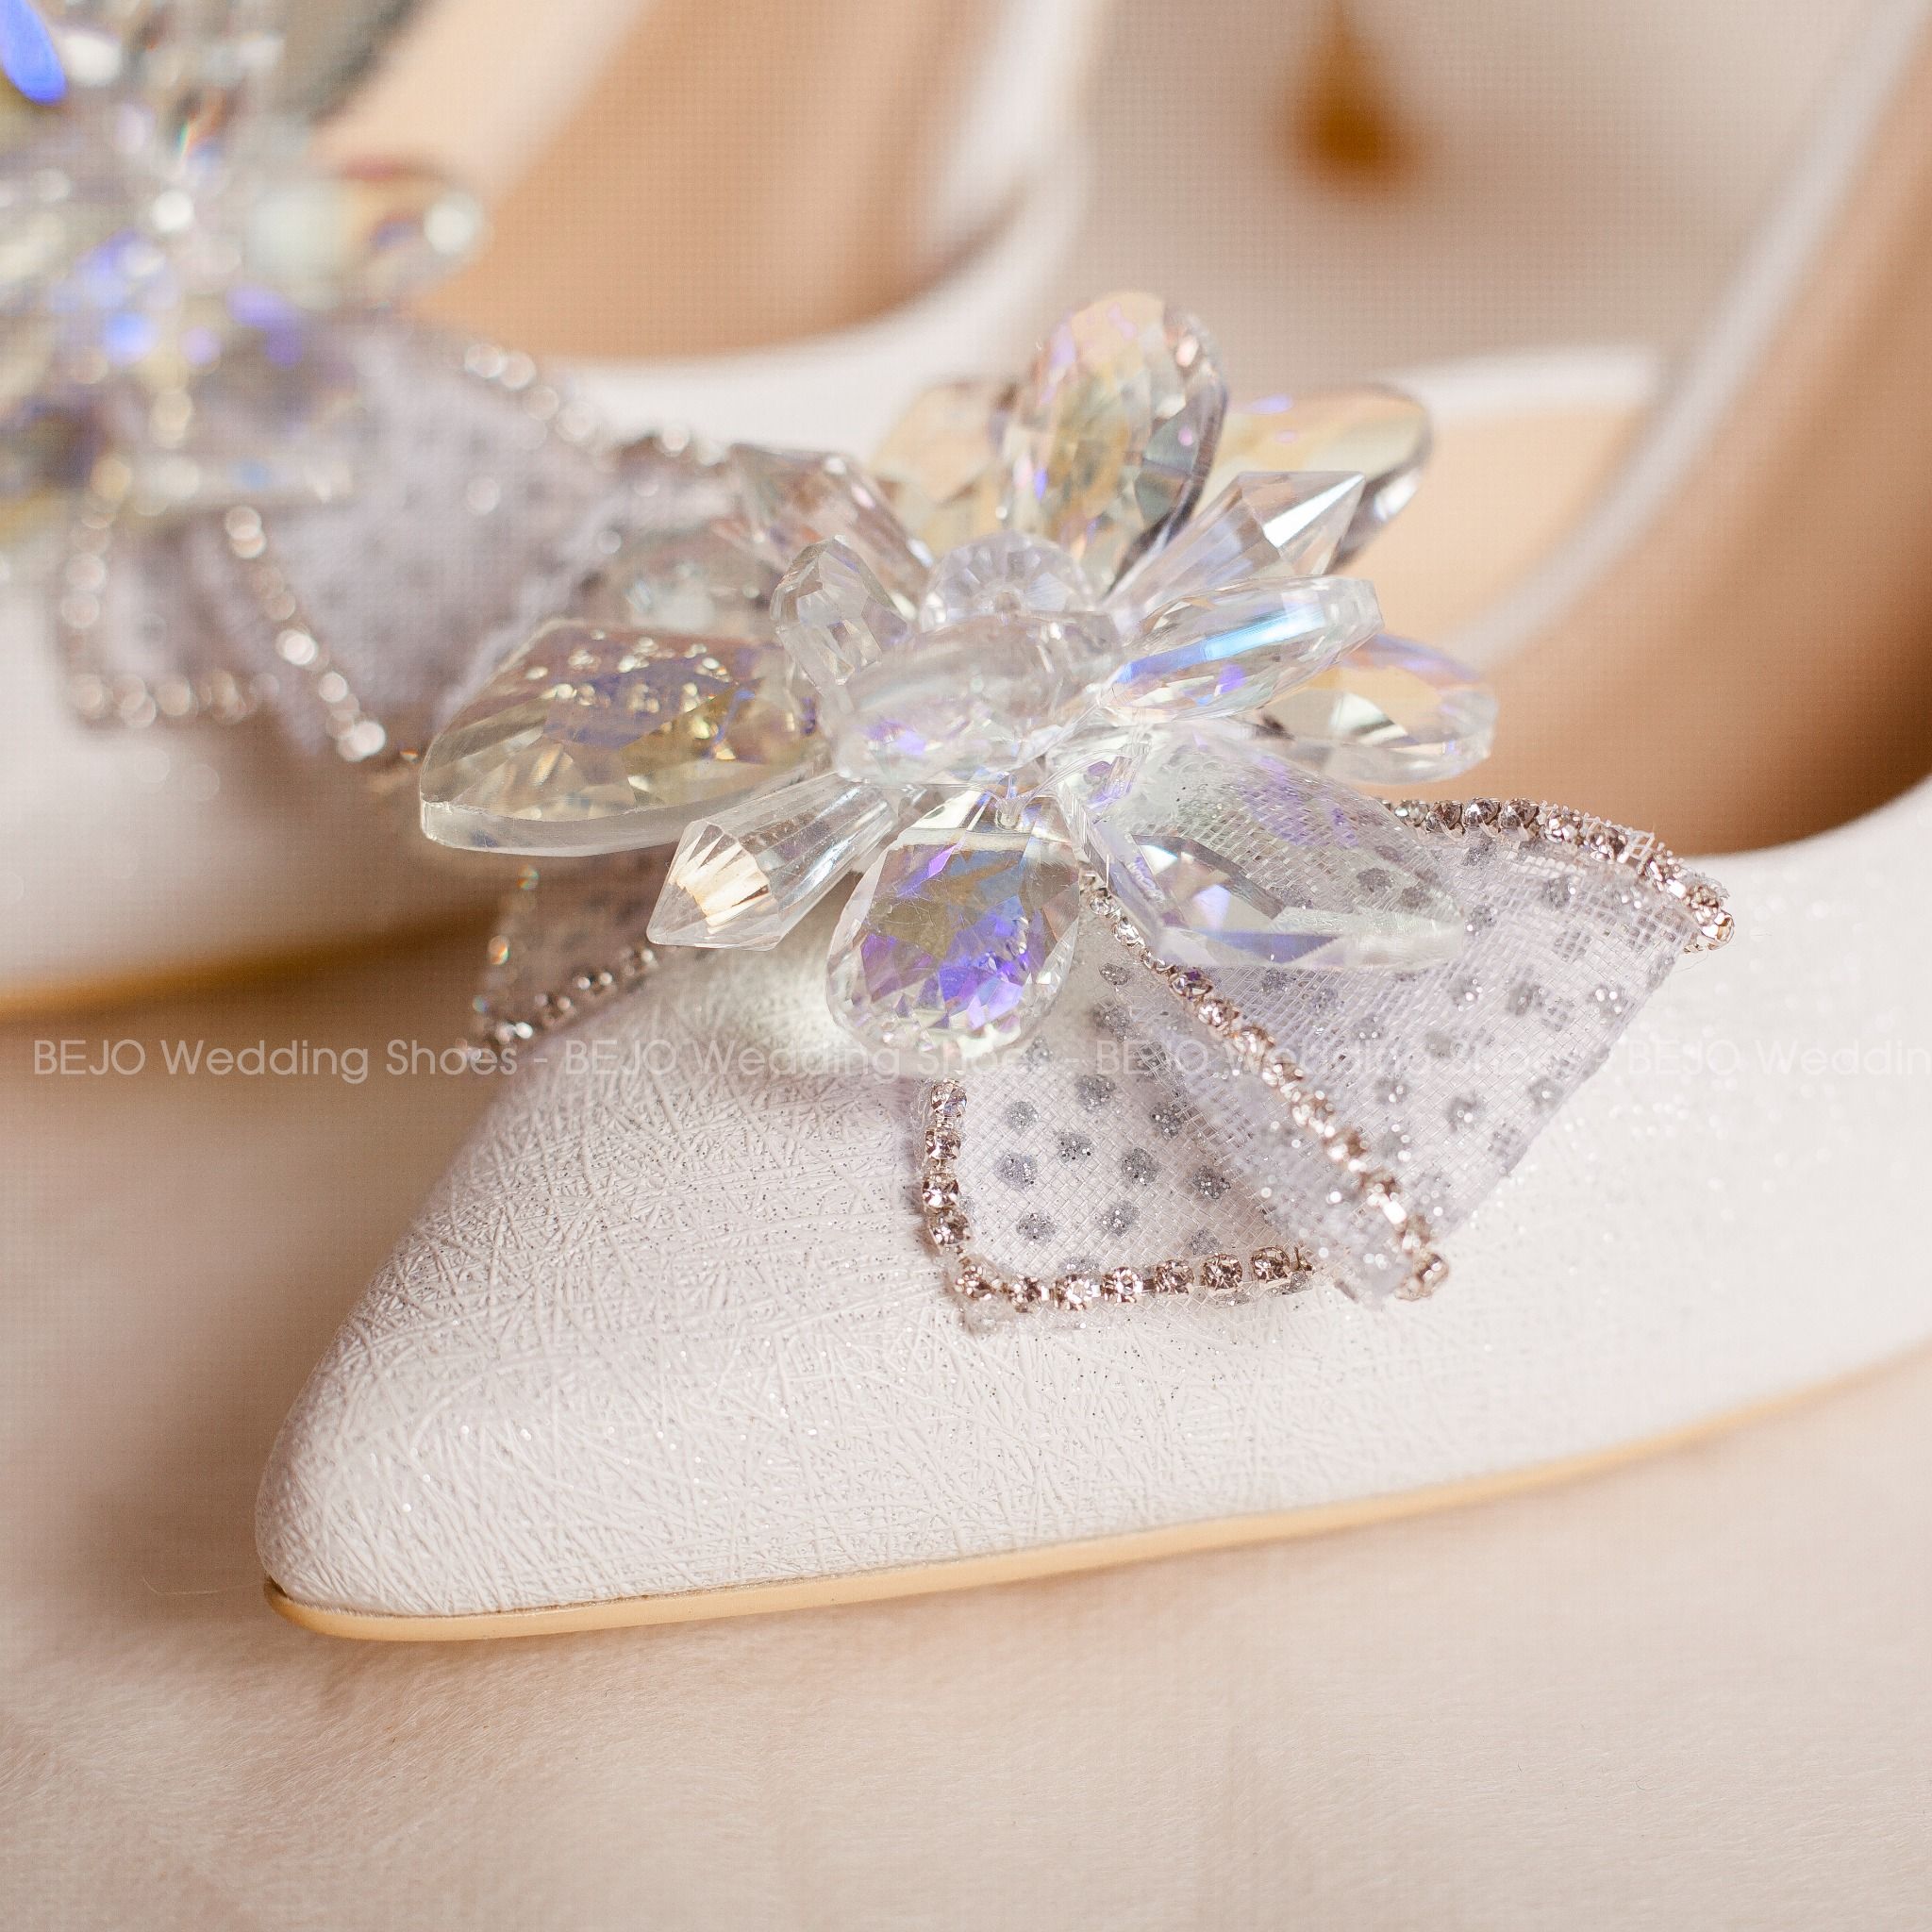  Giày cưới - Giày cô dâu cao cấp BEJO  H51.01.TRANG KIM TUYẾN. HOA PHA LÊ 